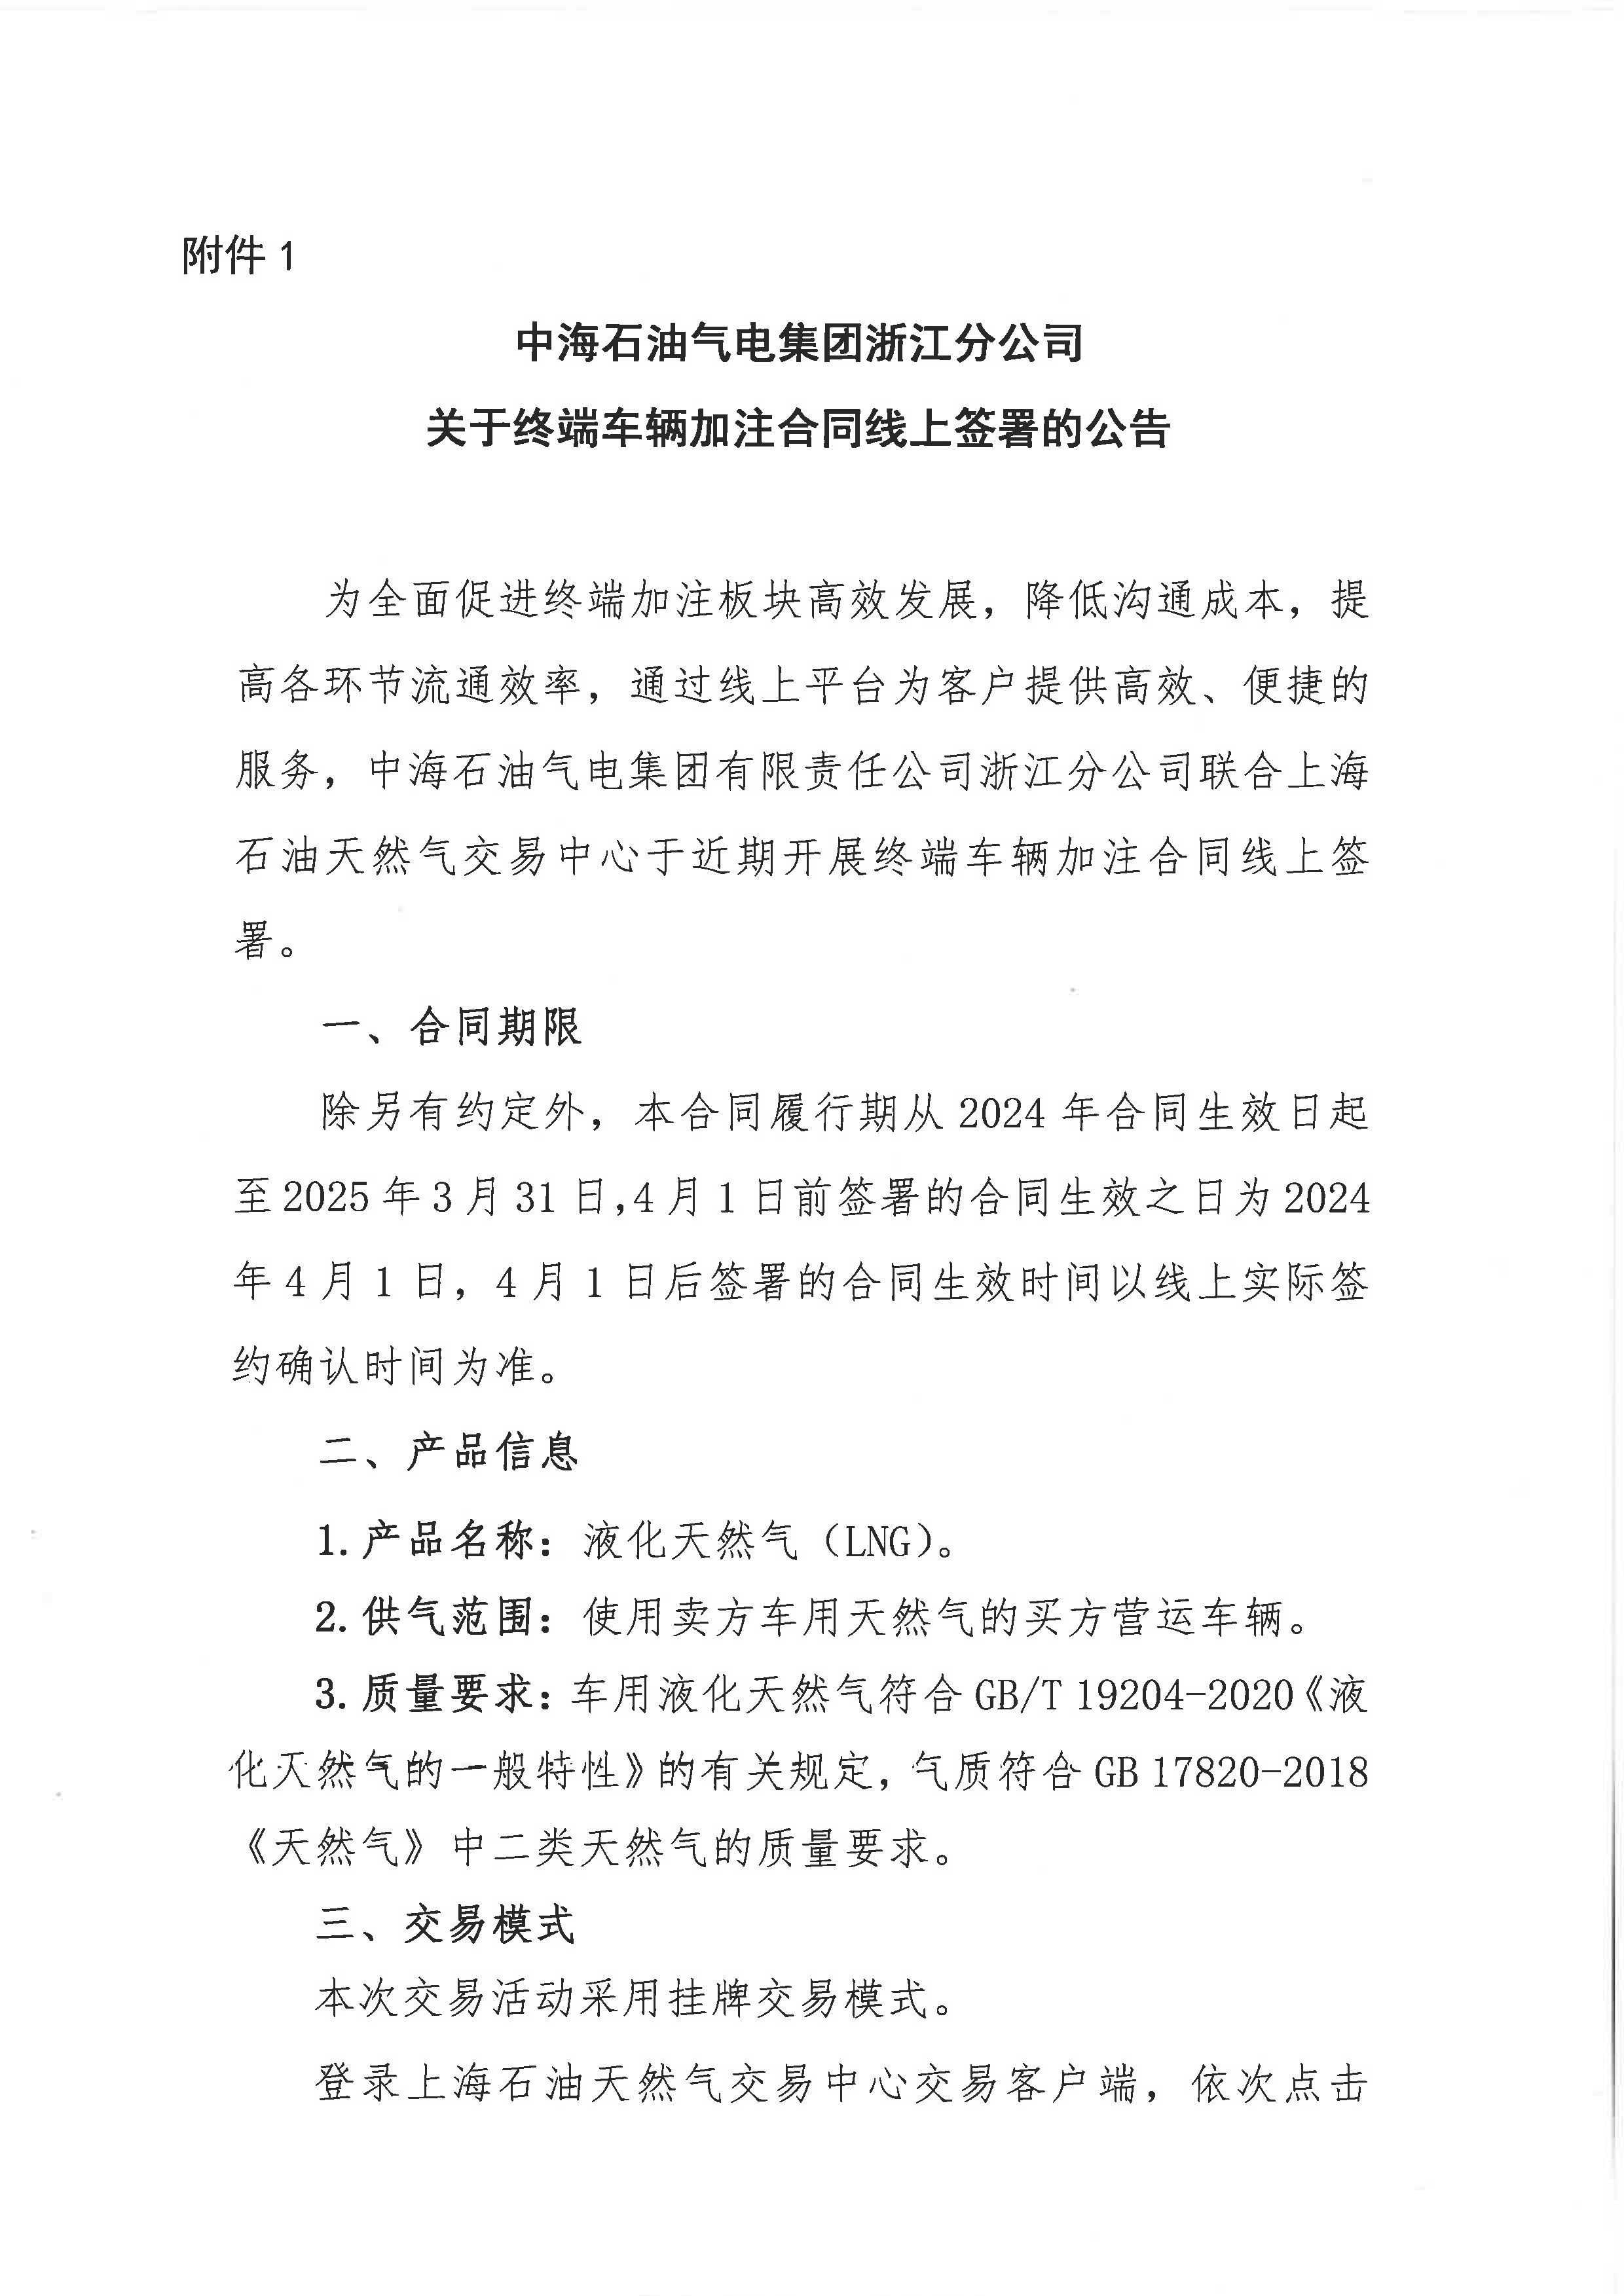 中海石油气电集团浙江分公司关于终端车辆加注合同线上签署的公告_页面_1.png